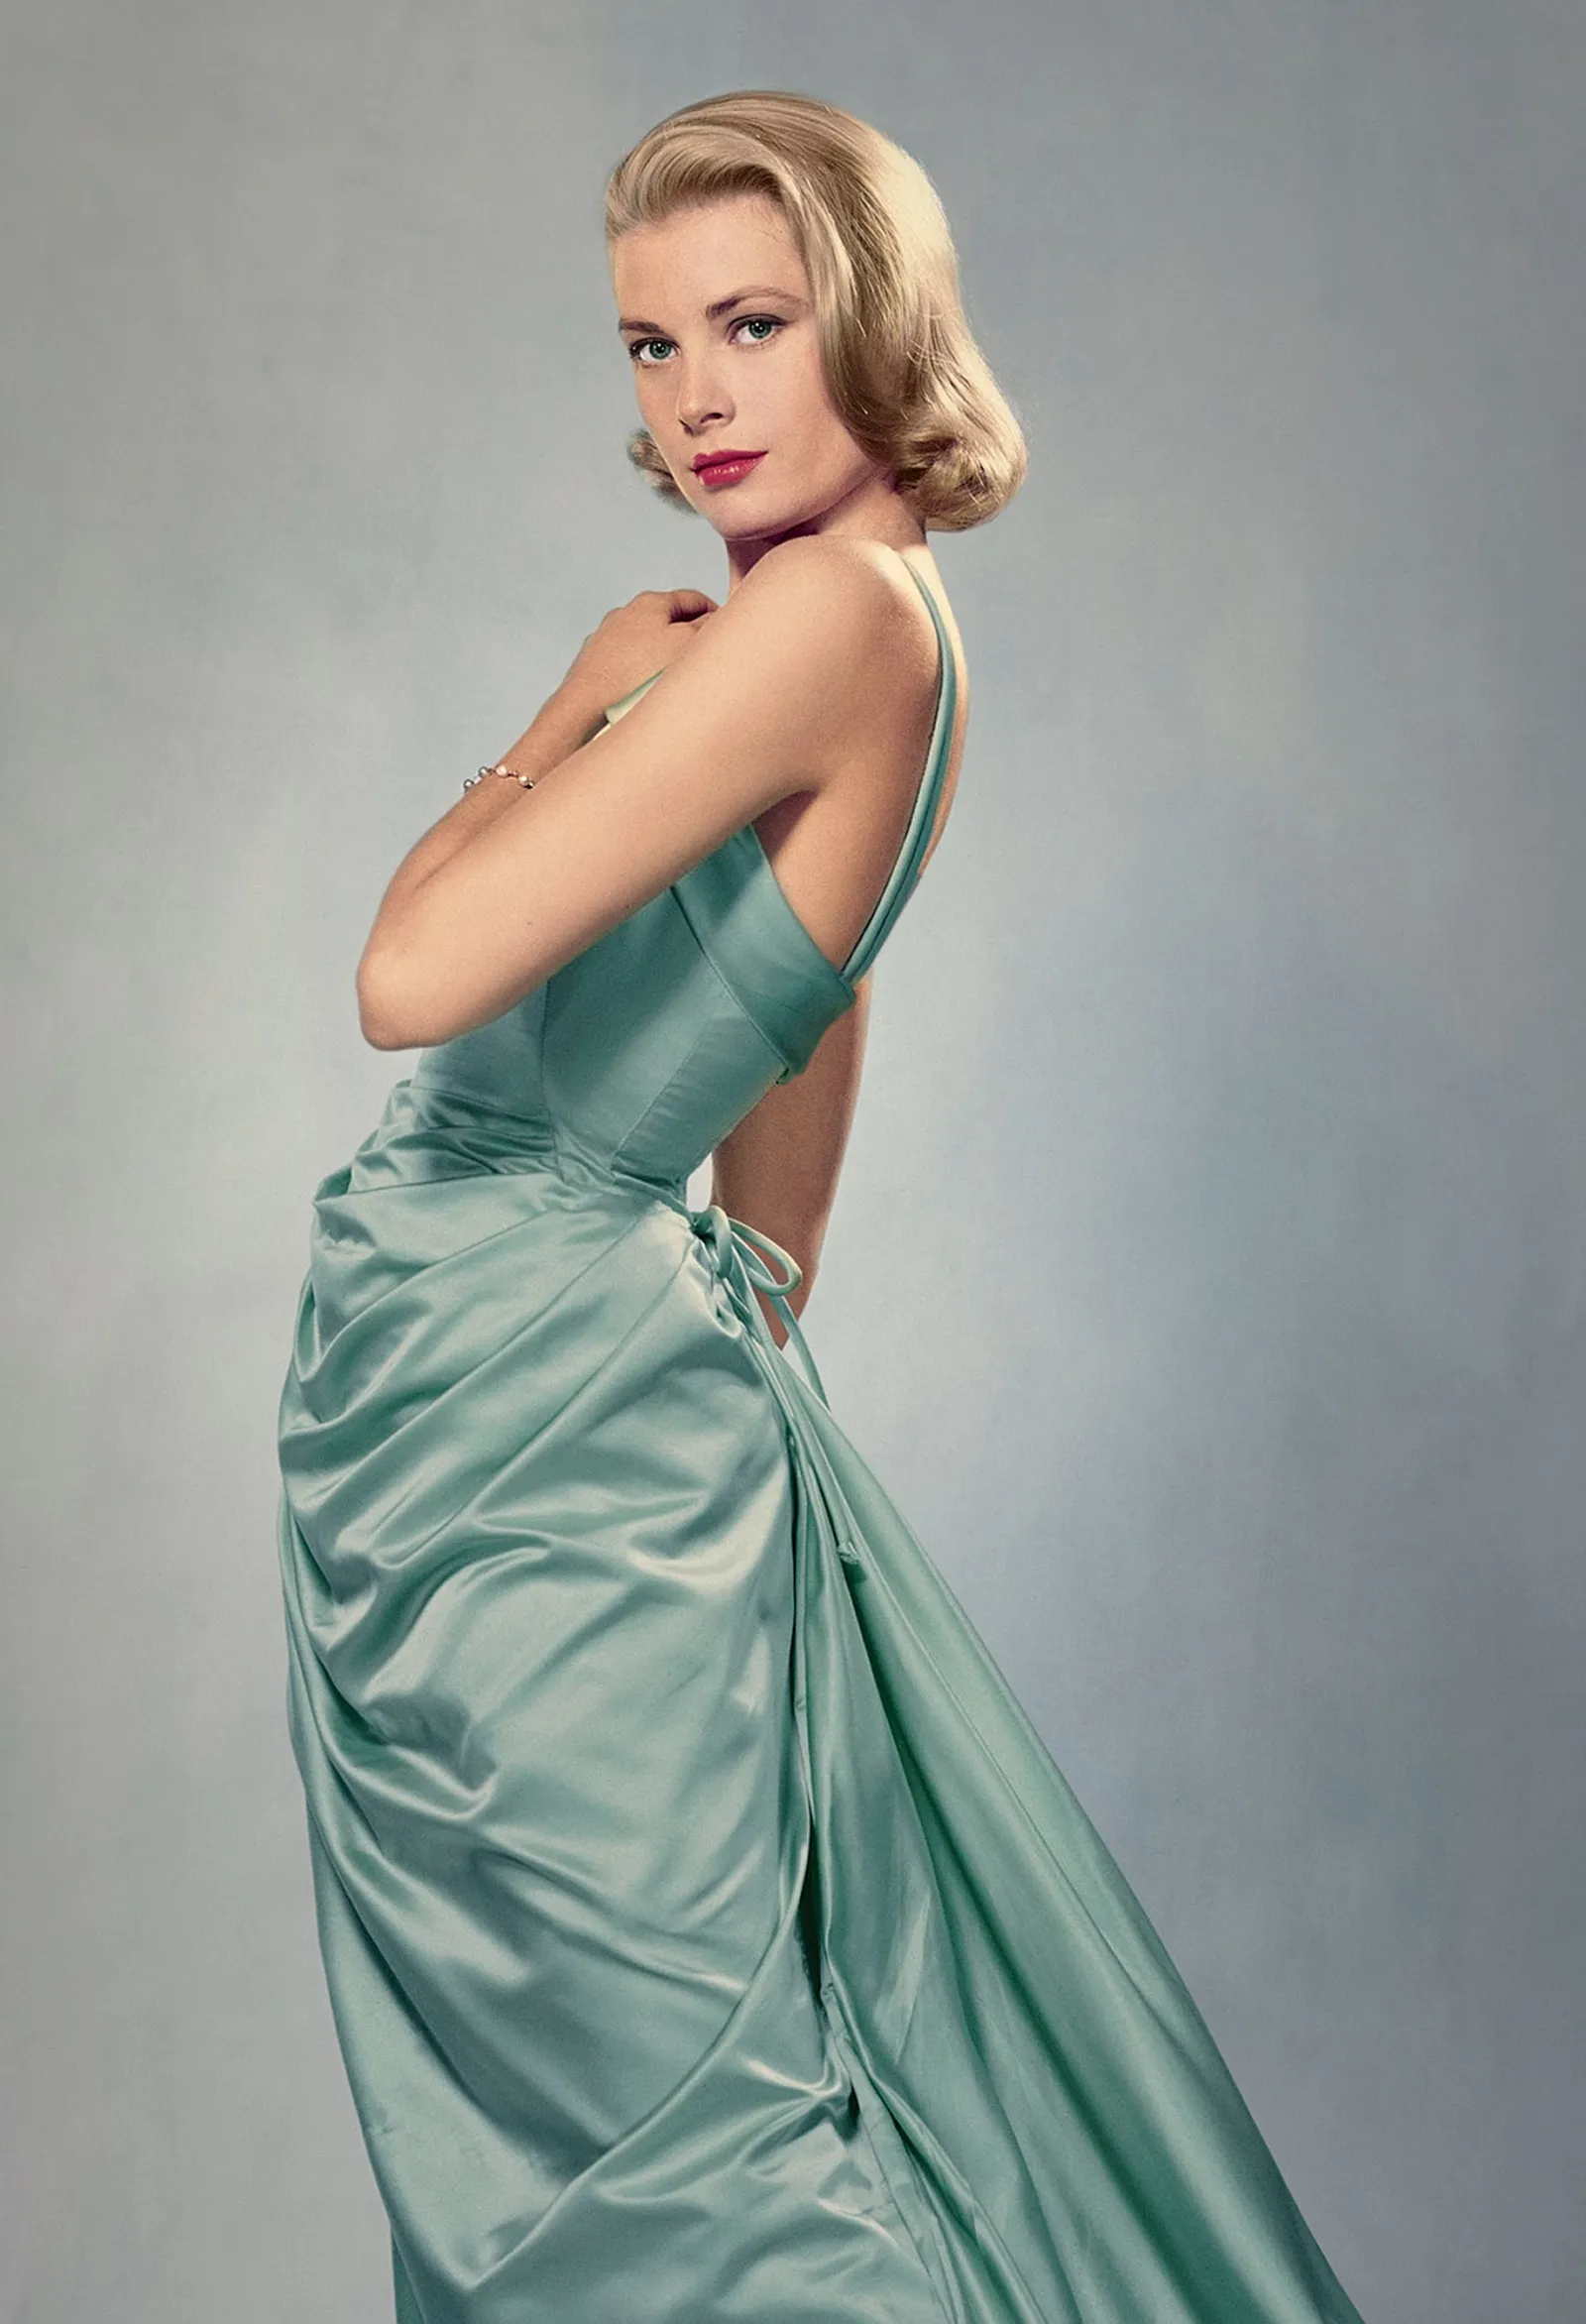 Potret Ikonik Grace Kelly, Aktris yang Jadi Inspirasi Nama Tas Hermès